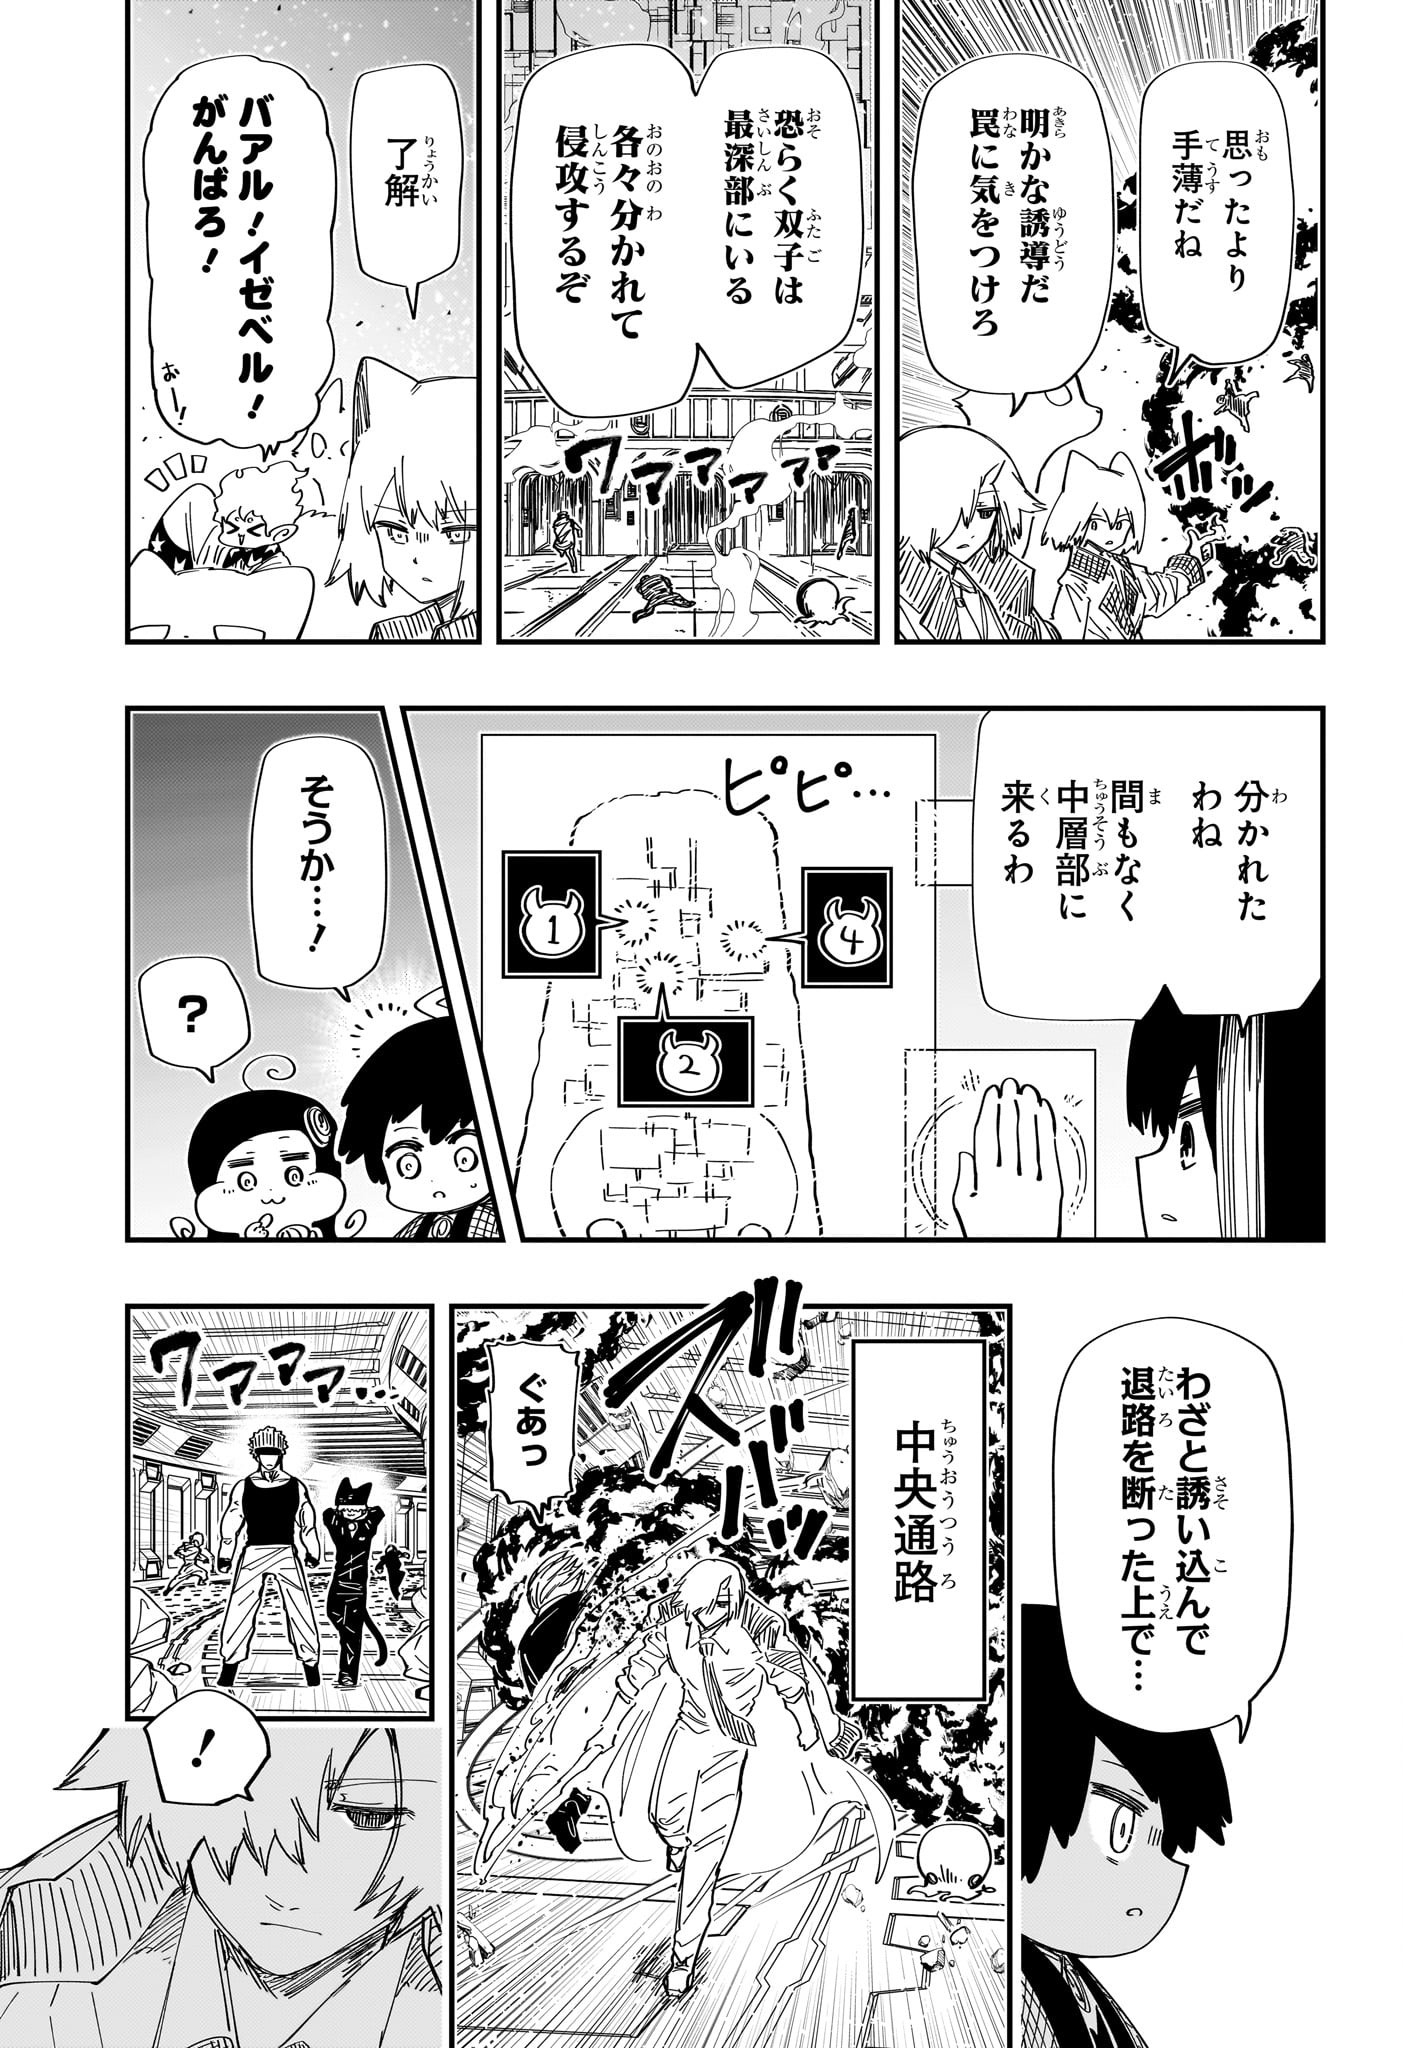 Yozakura-san Chi no Daisakusen - Chapter 225 - Page 9